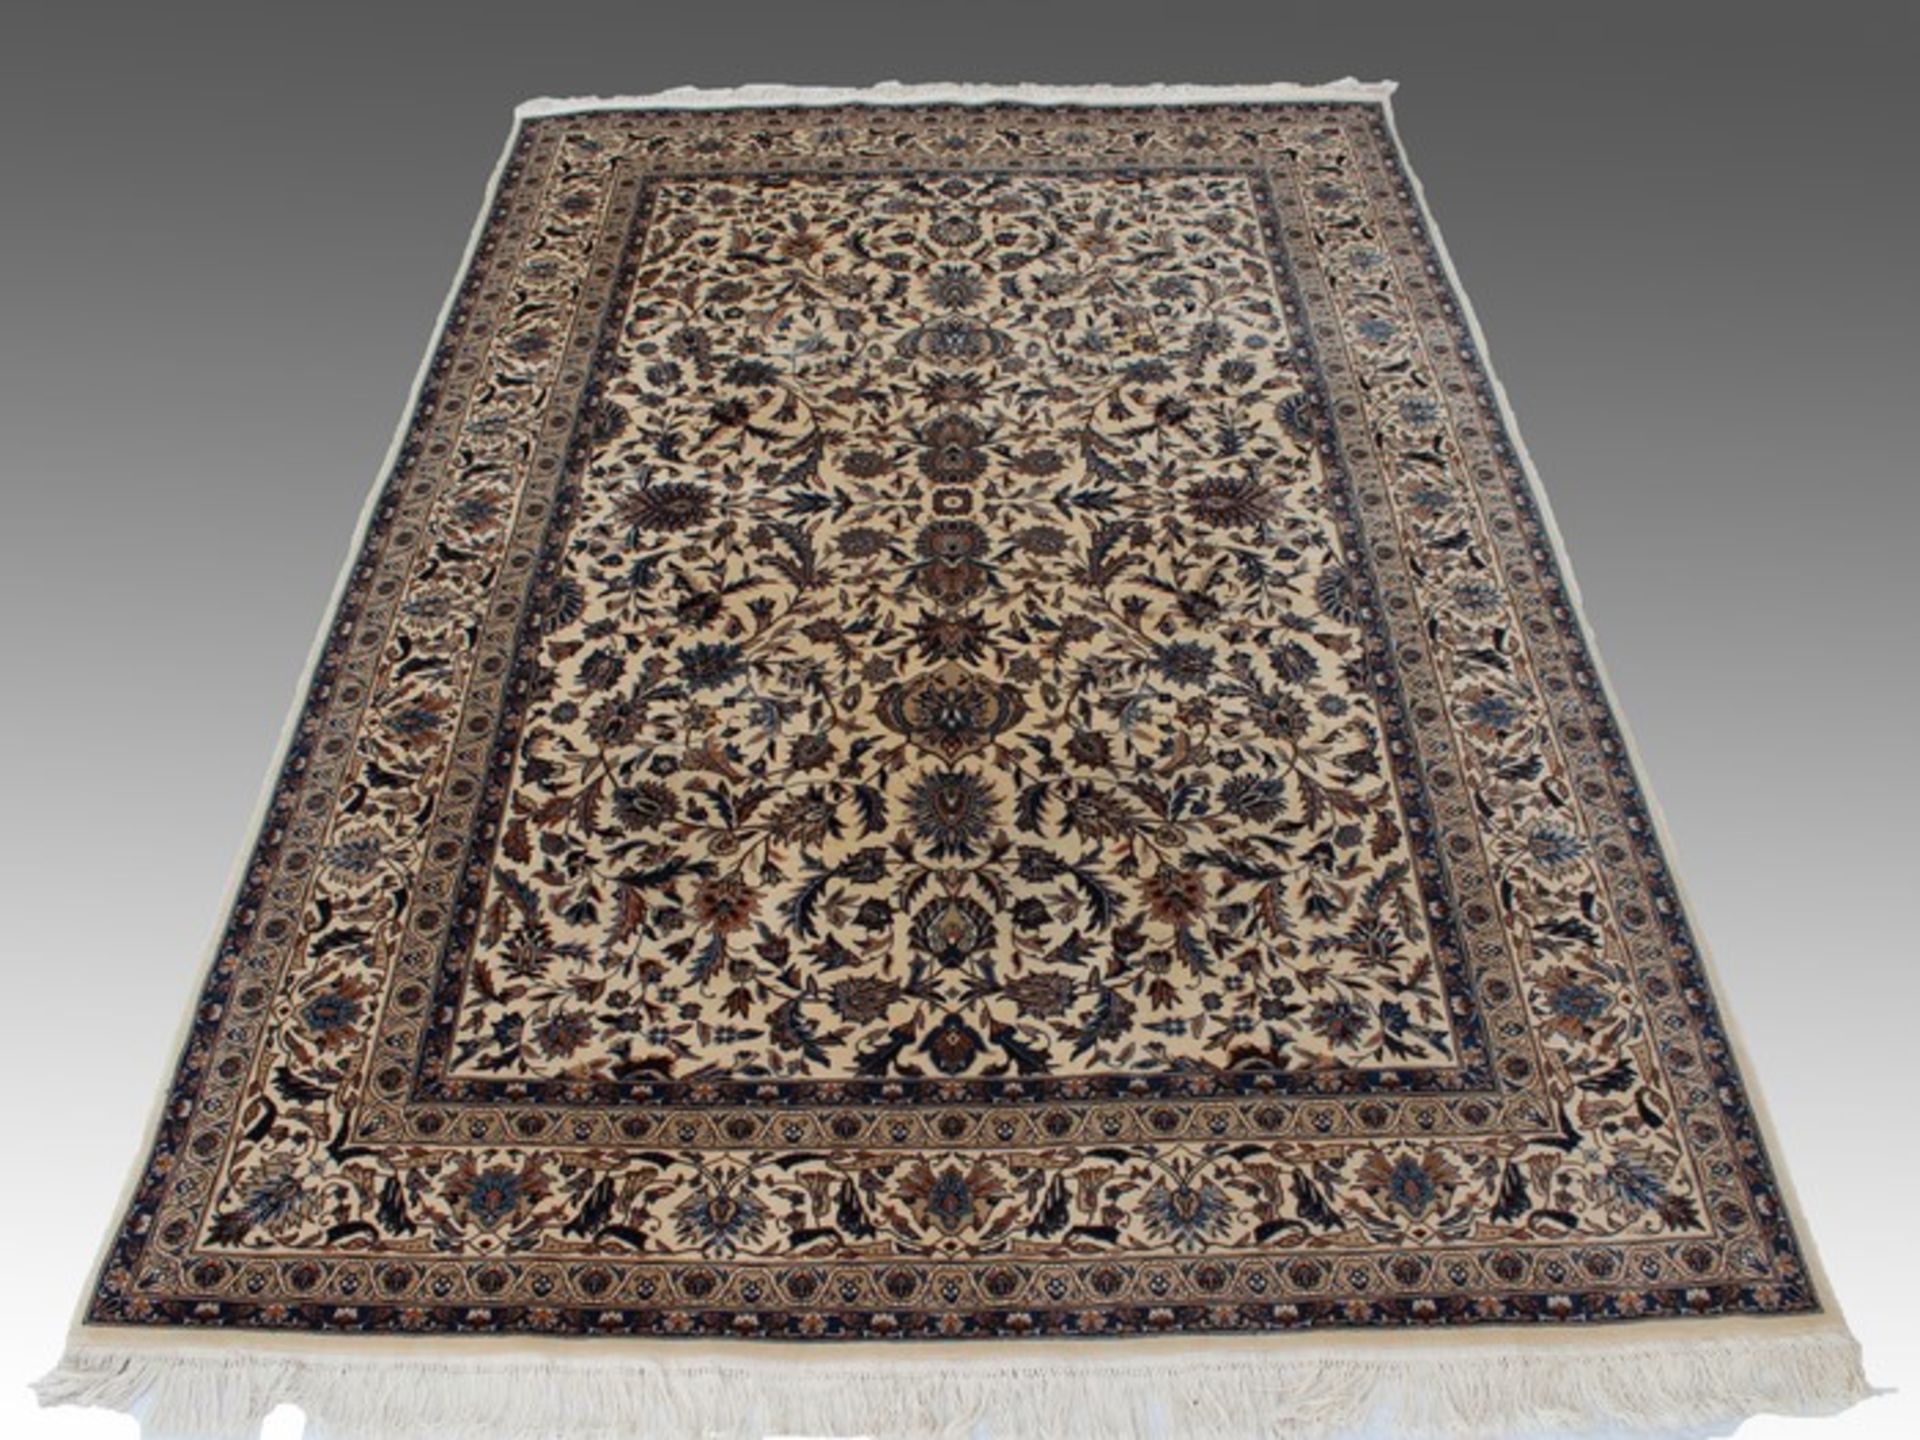 OrientteppichIran, Isfahan oder Nain, Baumwolle/Korkwolle, feine Knüpfung, beigegrundig, floral